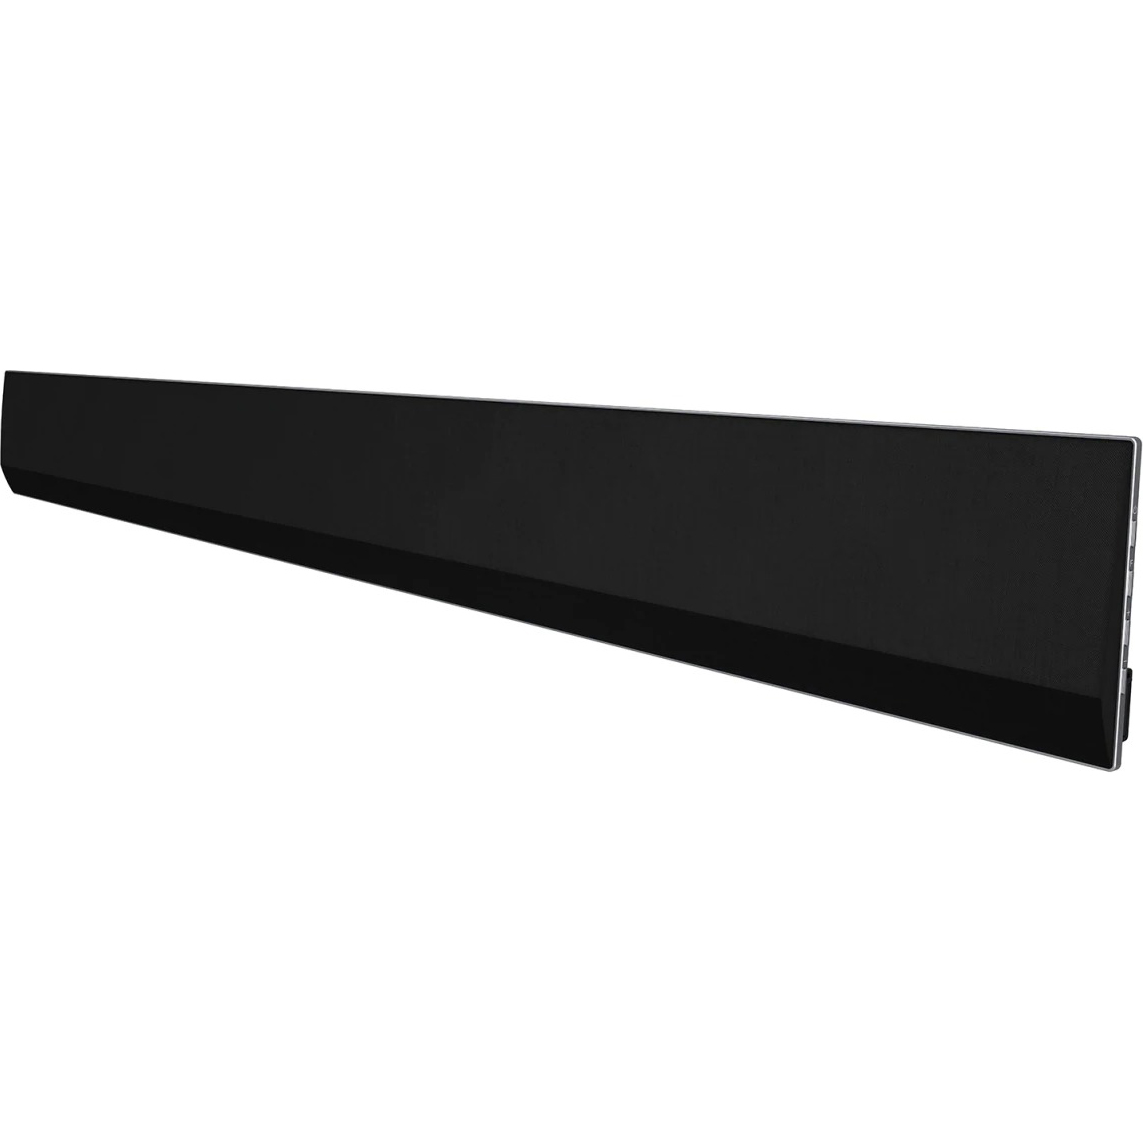 Саундбар LG GX, цвет черный, размер 39,4*18*29 см - фото 2